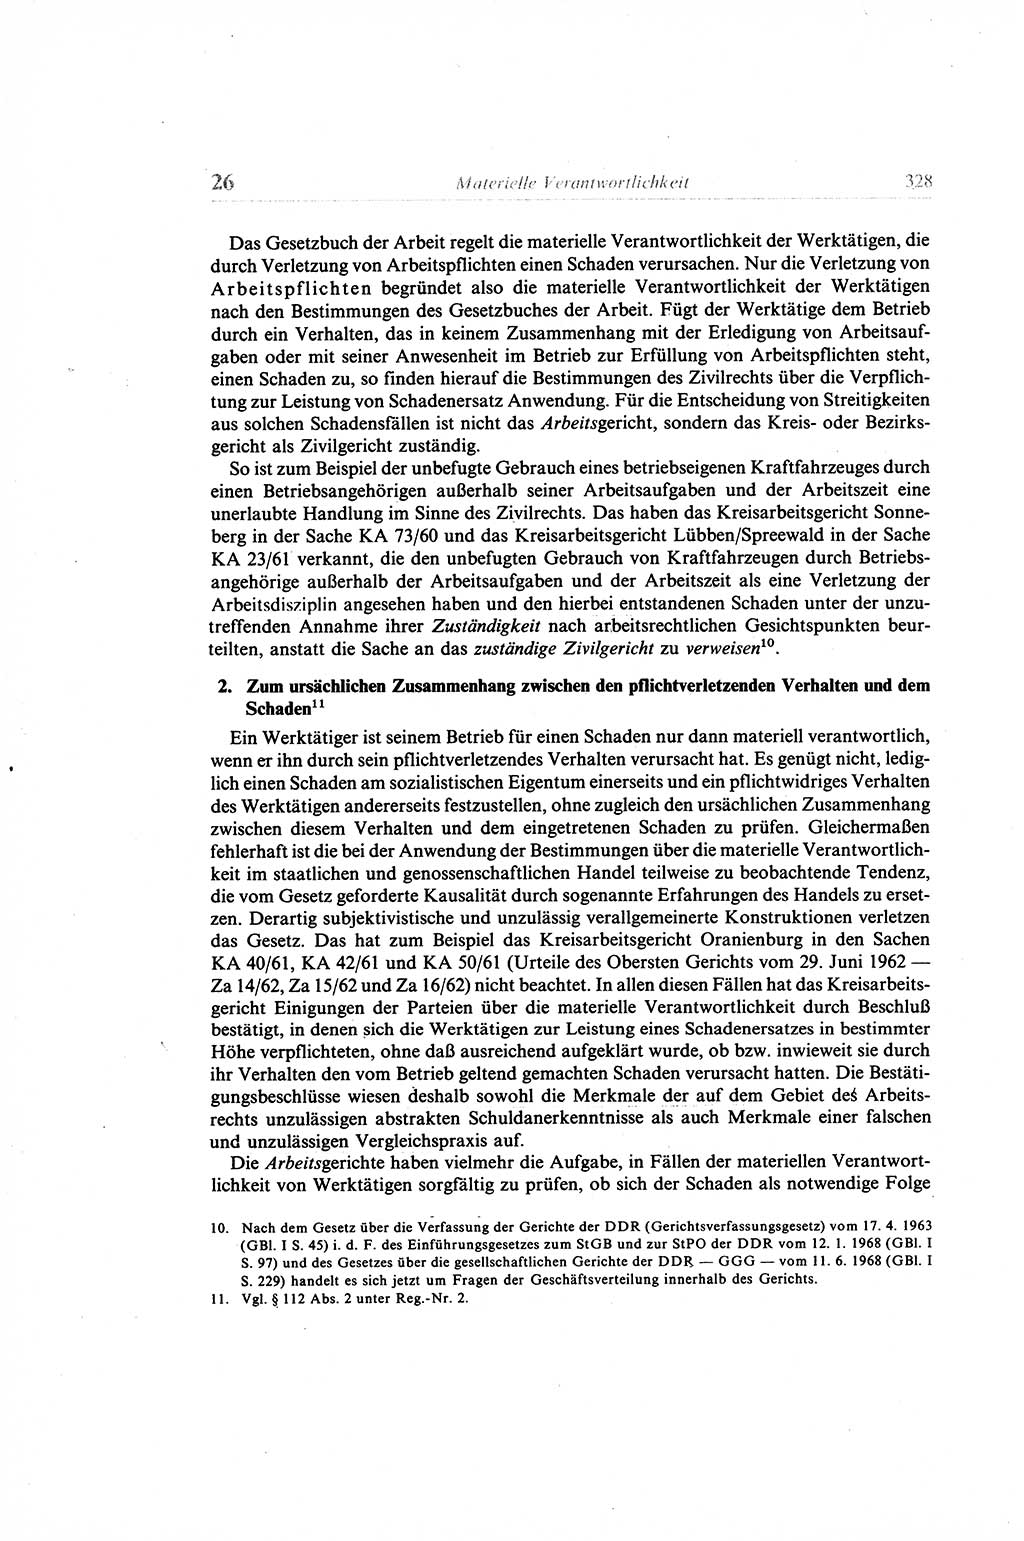 Gesetzbuch der Arbeit (GBA) und andere ausgewählte rechtliche Bestimmungen [Deutsche Demokratische Republik (DDR)] 1968, Seite 328 (GBA DDR 1968, S. 328)